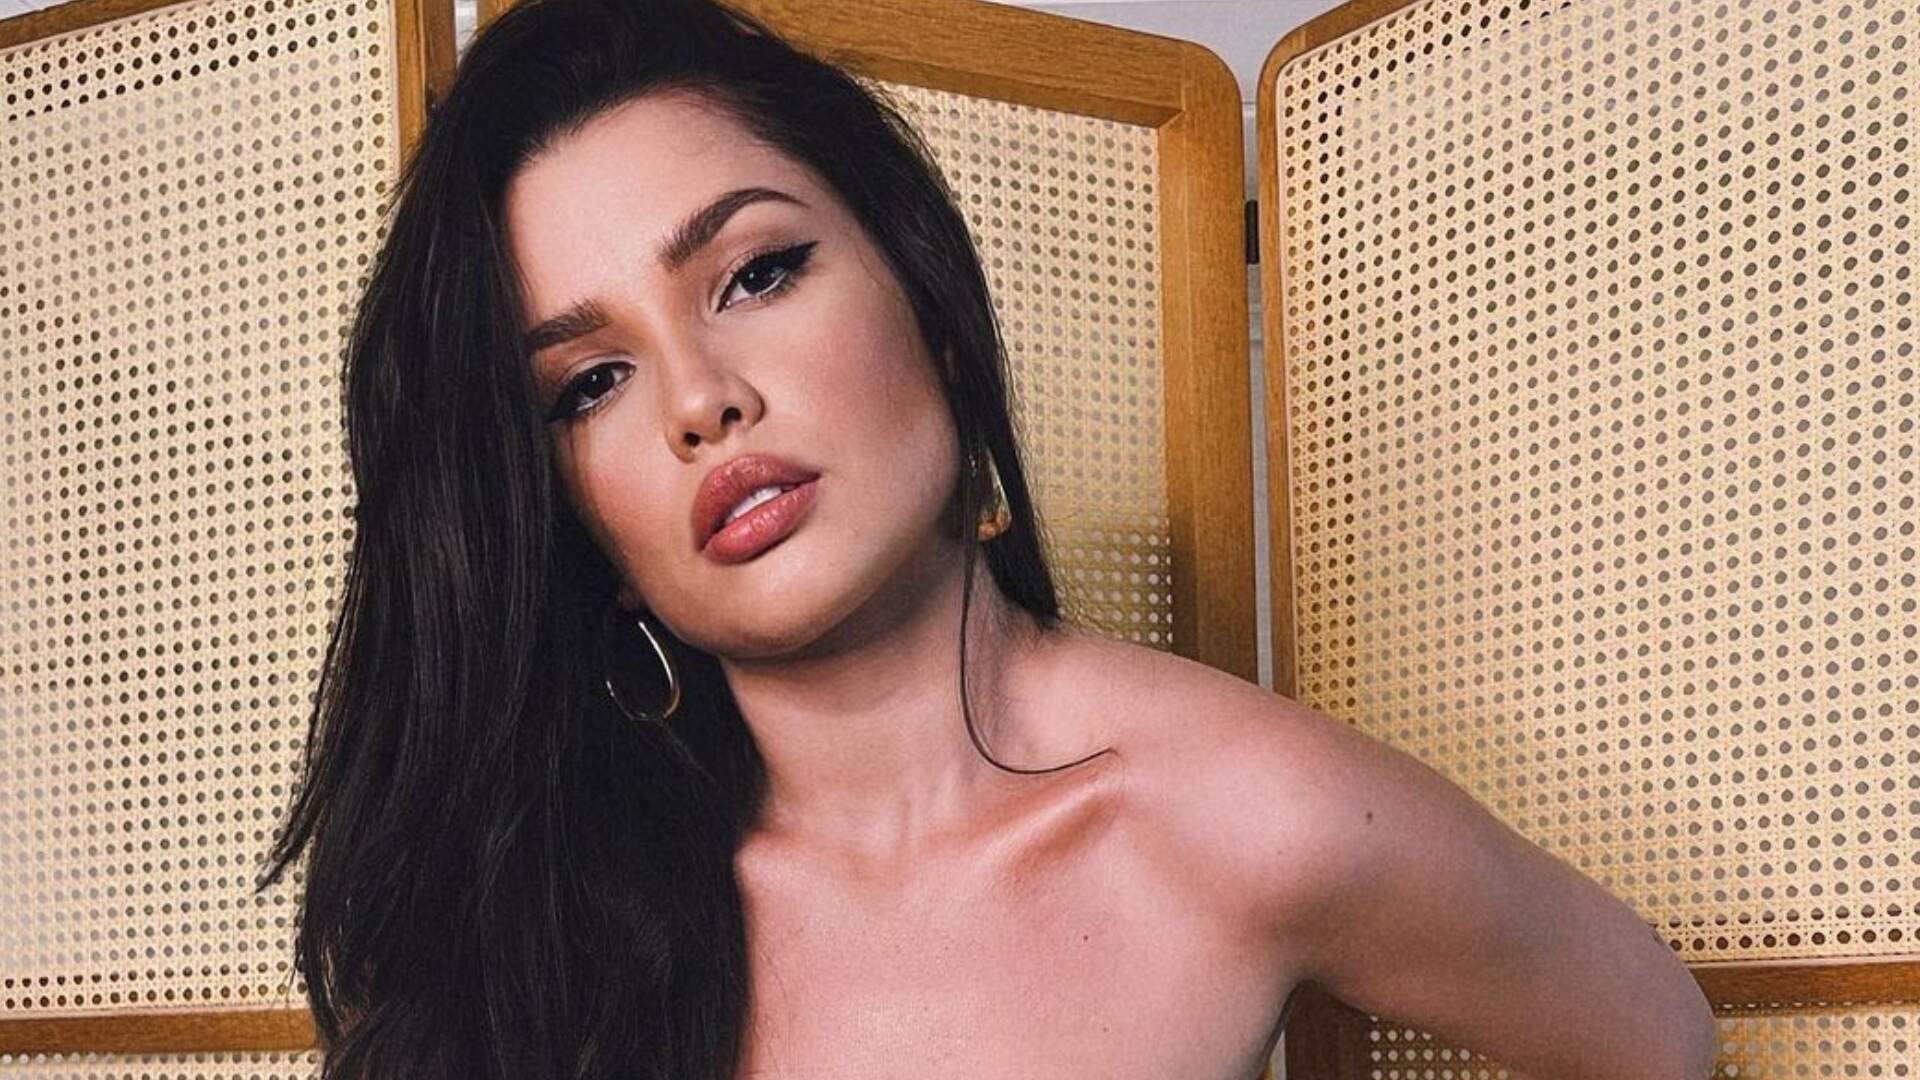 Juliette aposta em look coladinho e transparente para sensualizar no Instagram: “Marcou tudo” - Metropolitana FM